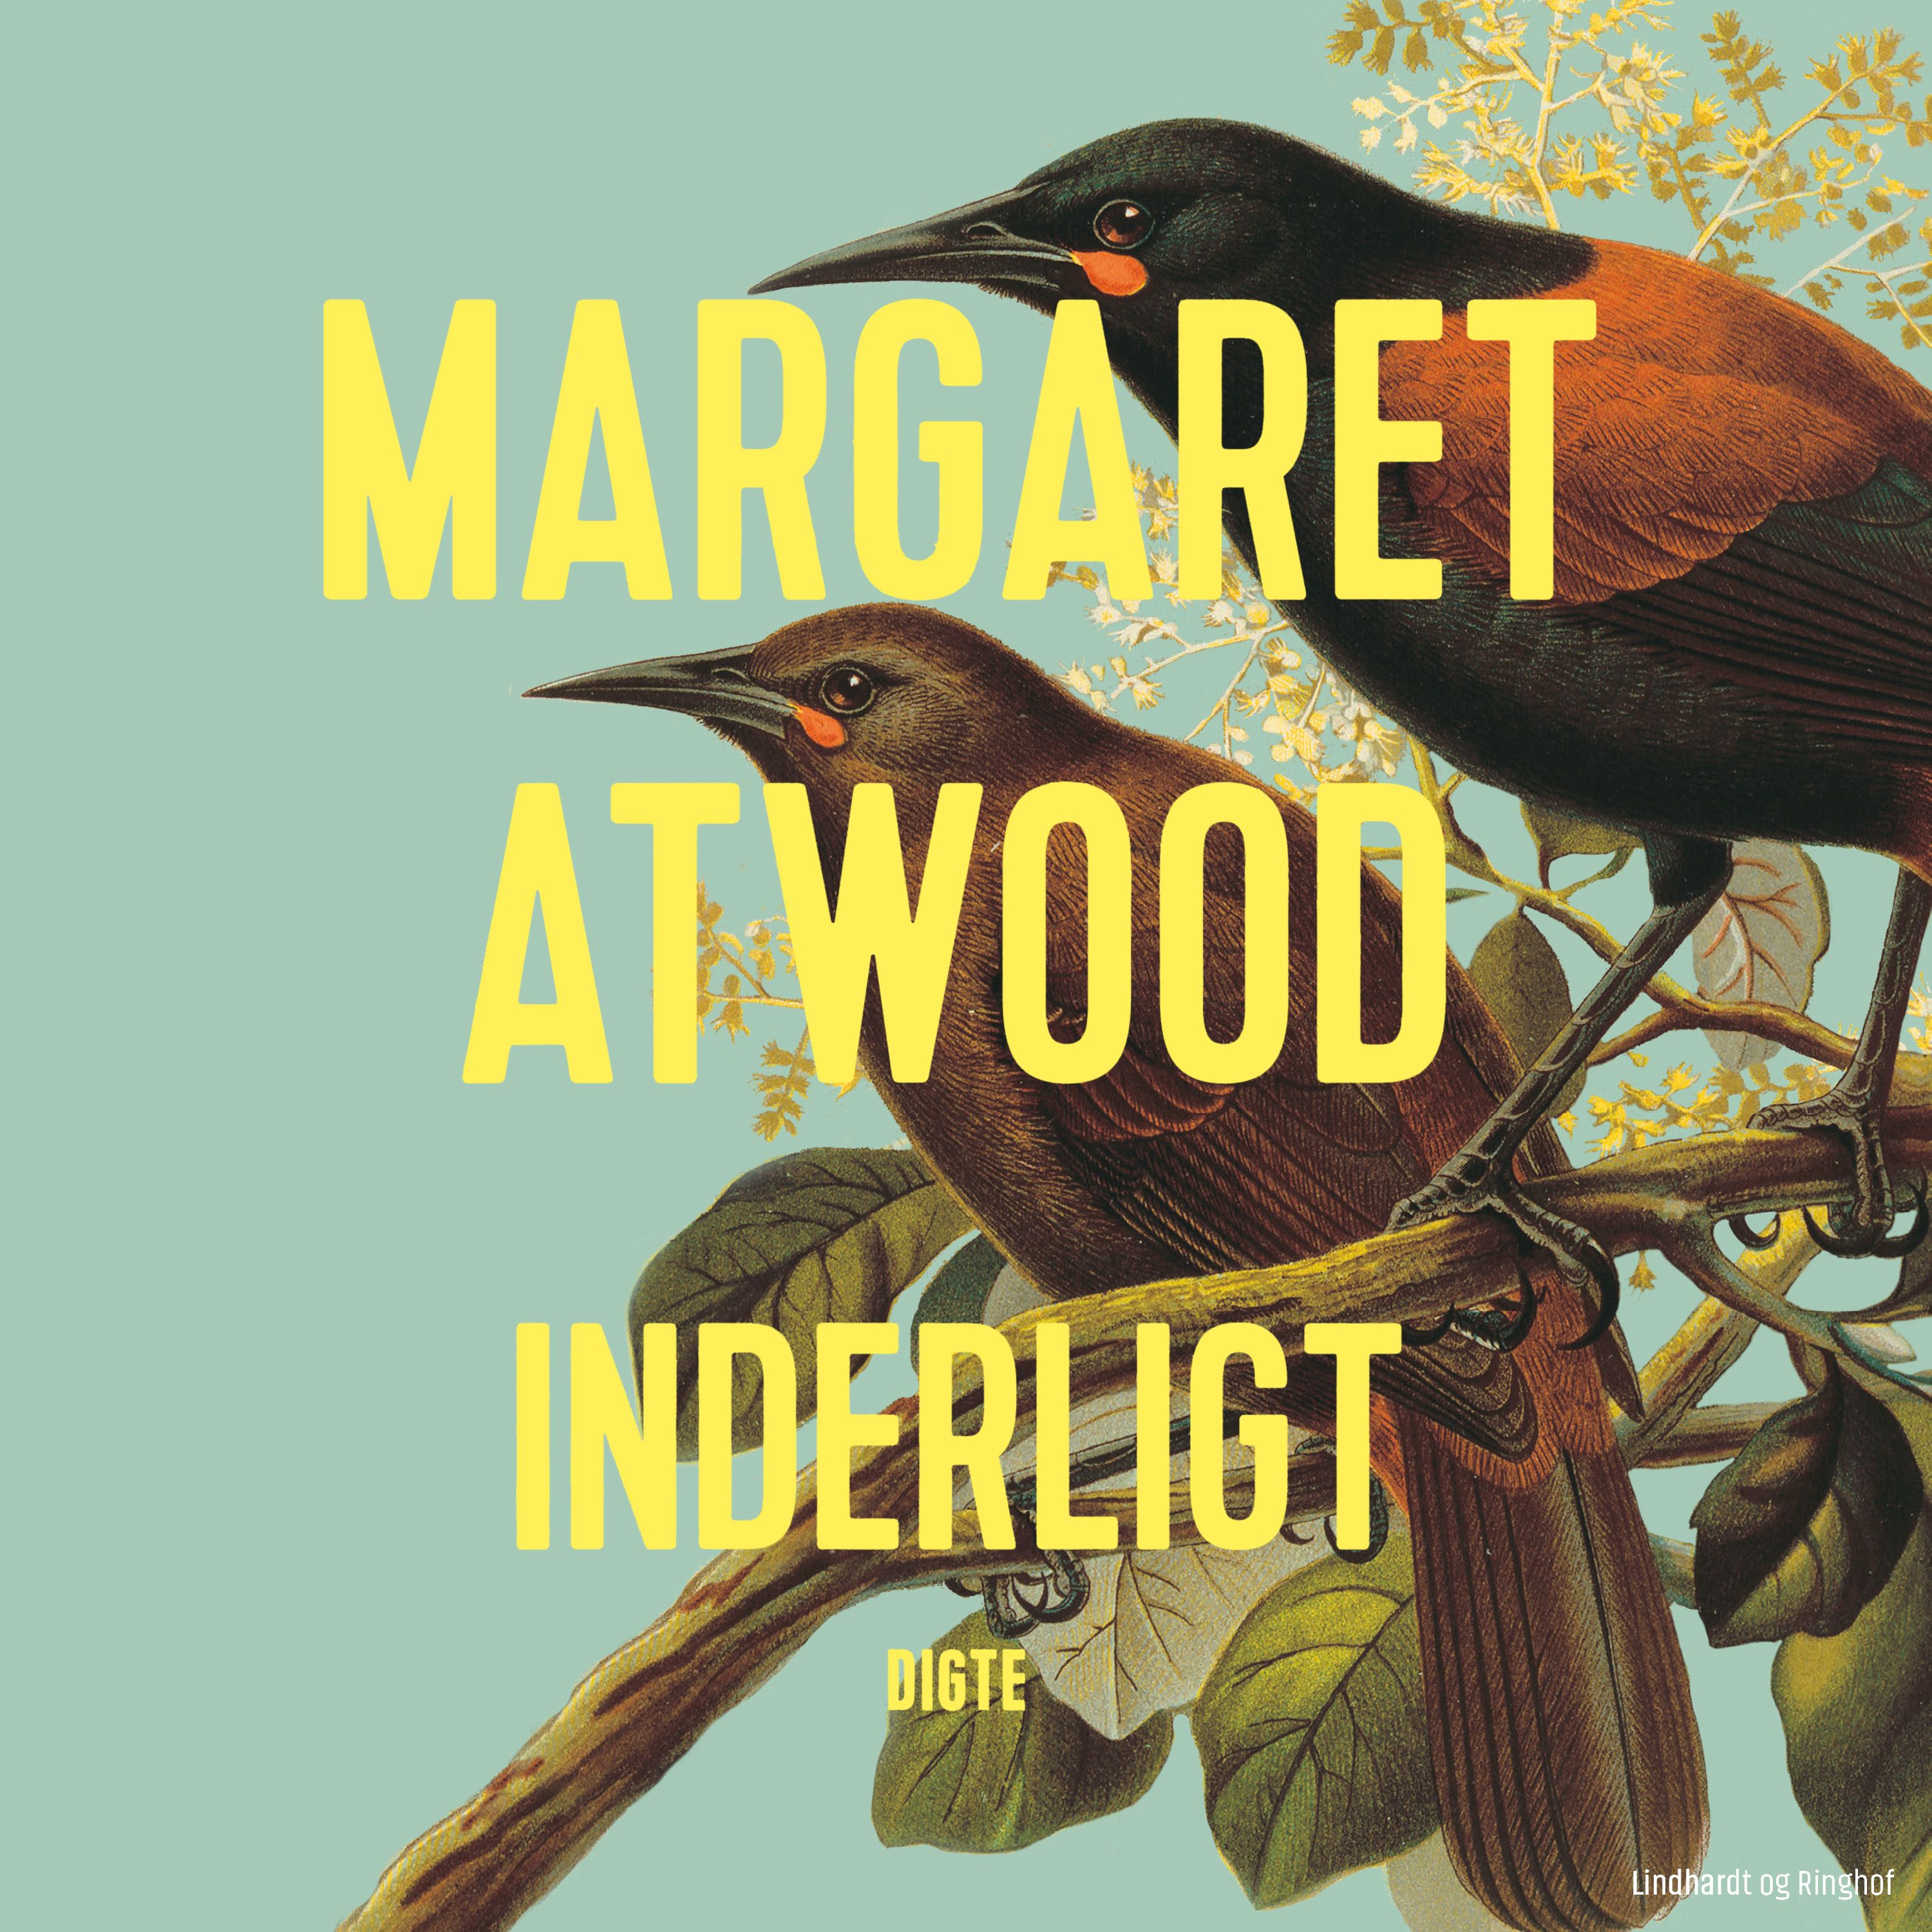 Inderligt, ljudbok av Margaret Atwood